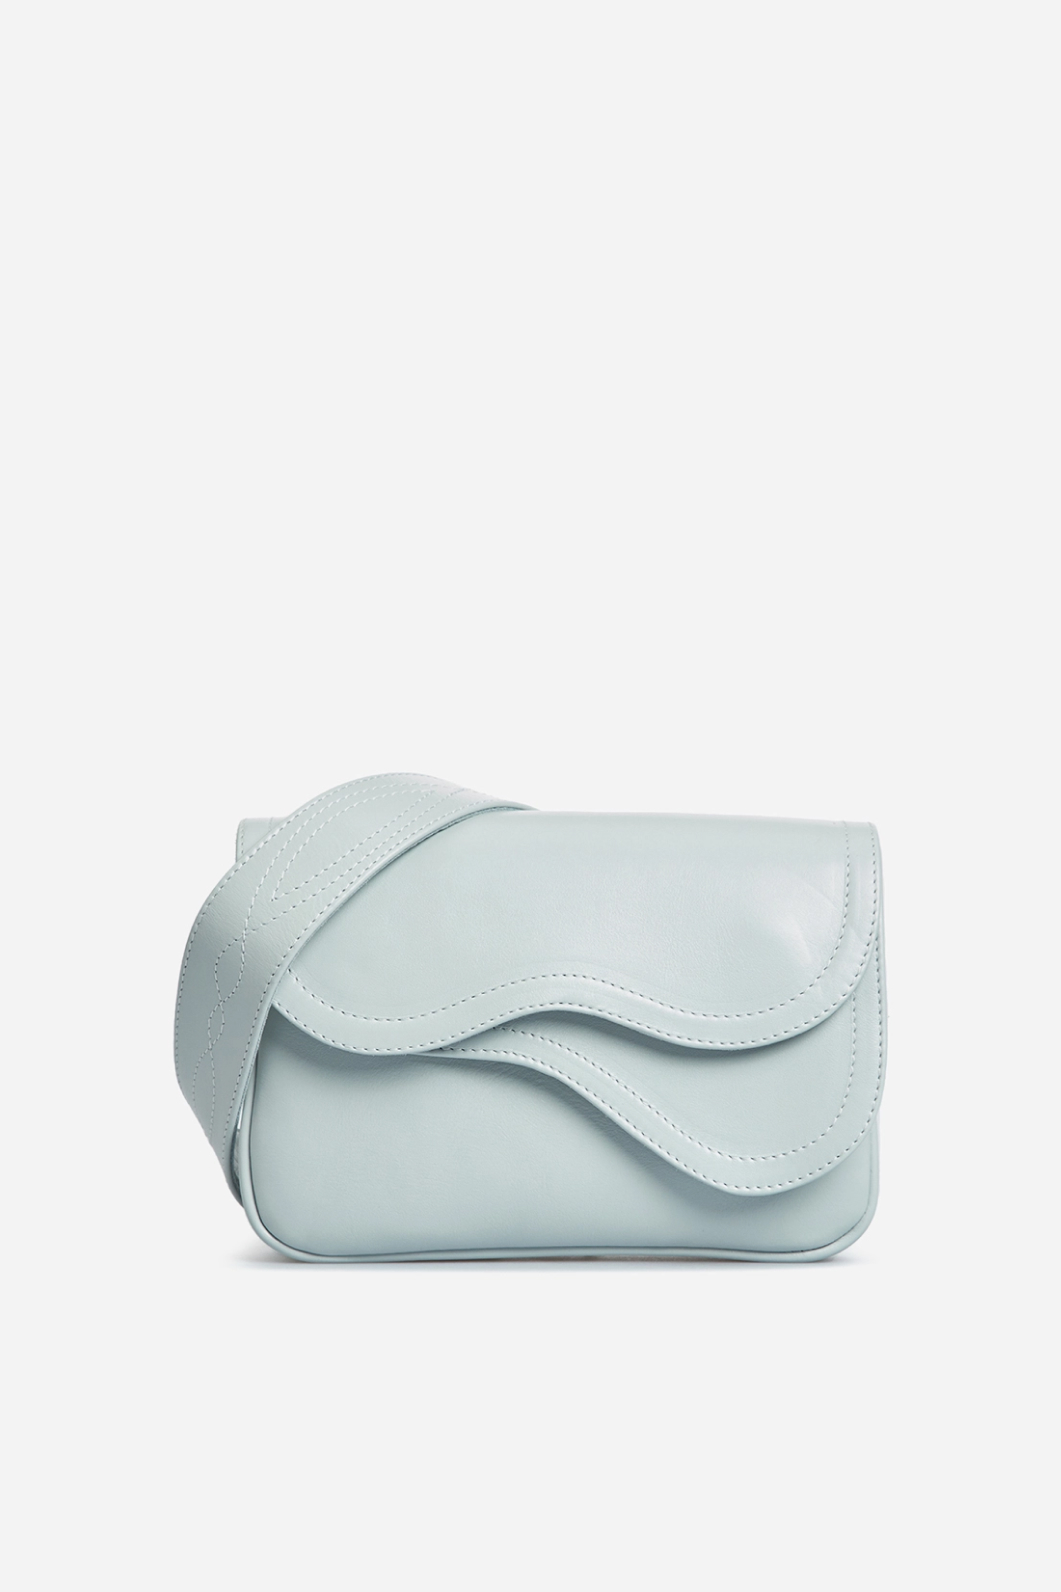 Кросбоди Saddle bag mini из голубой кожи /серебро/